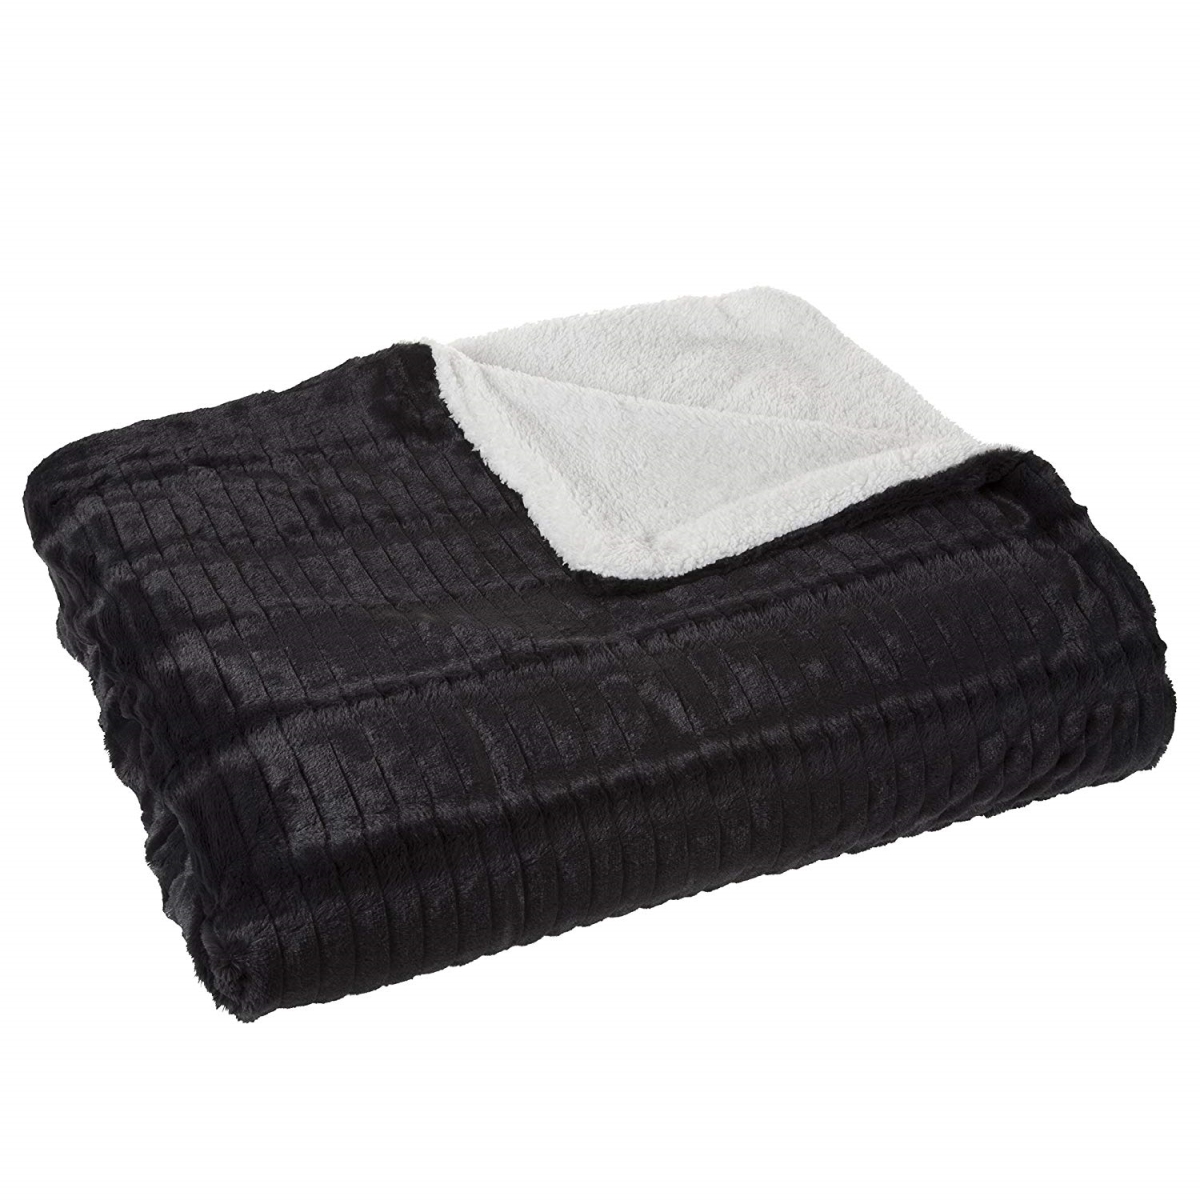 61a-01077 Fleece & Sherpa Blanket, Full & Queen Size - Black